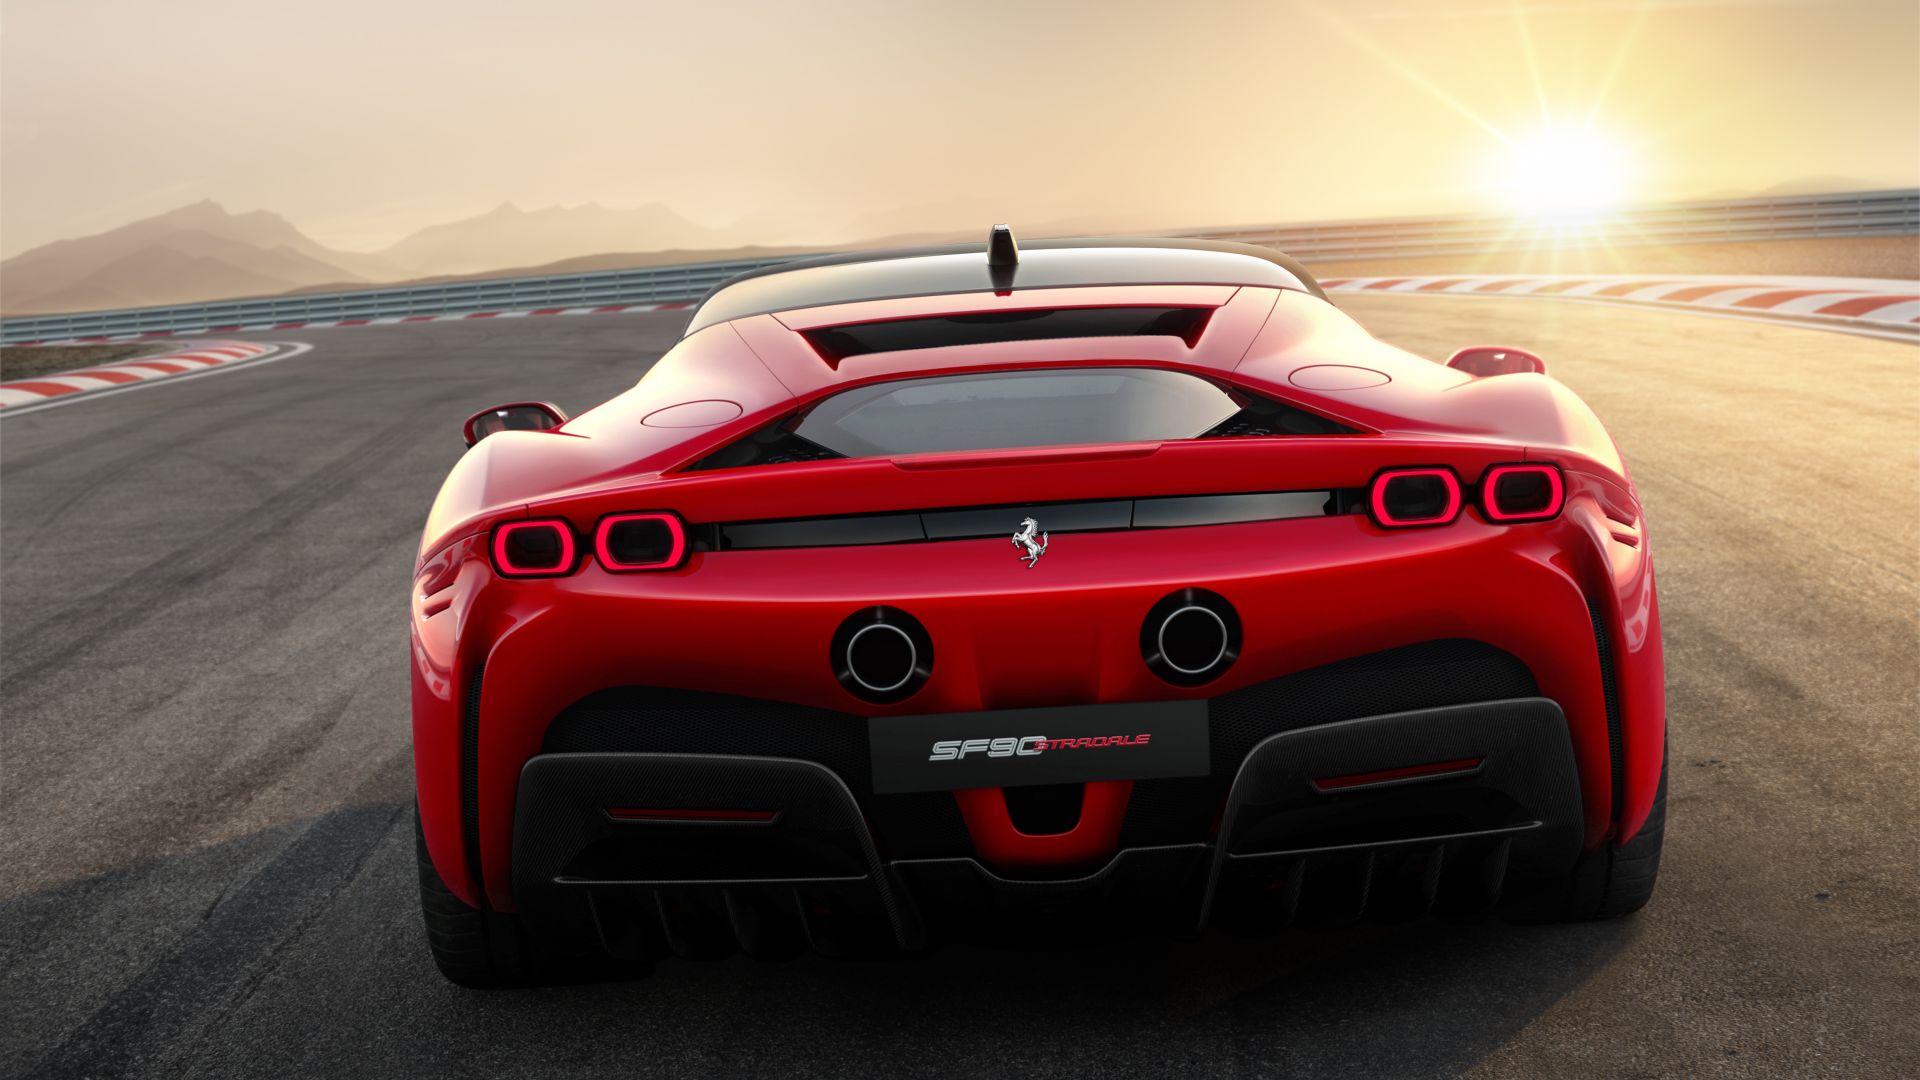 Ferrari SF90 Stradale, 2019 Cars, supercar, 4K (horizontal)